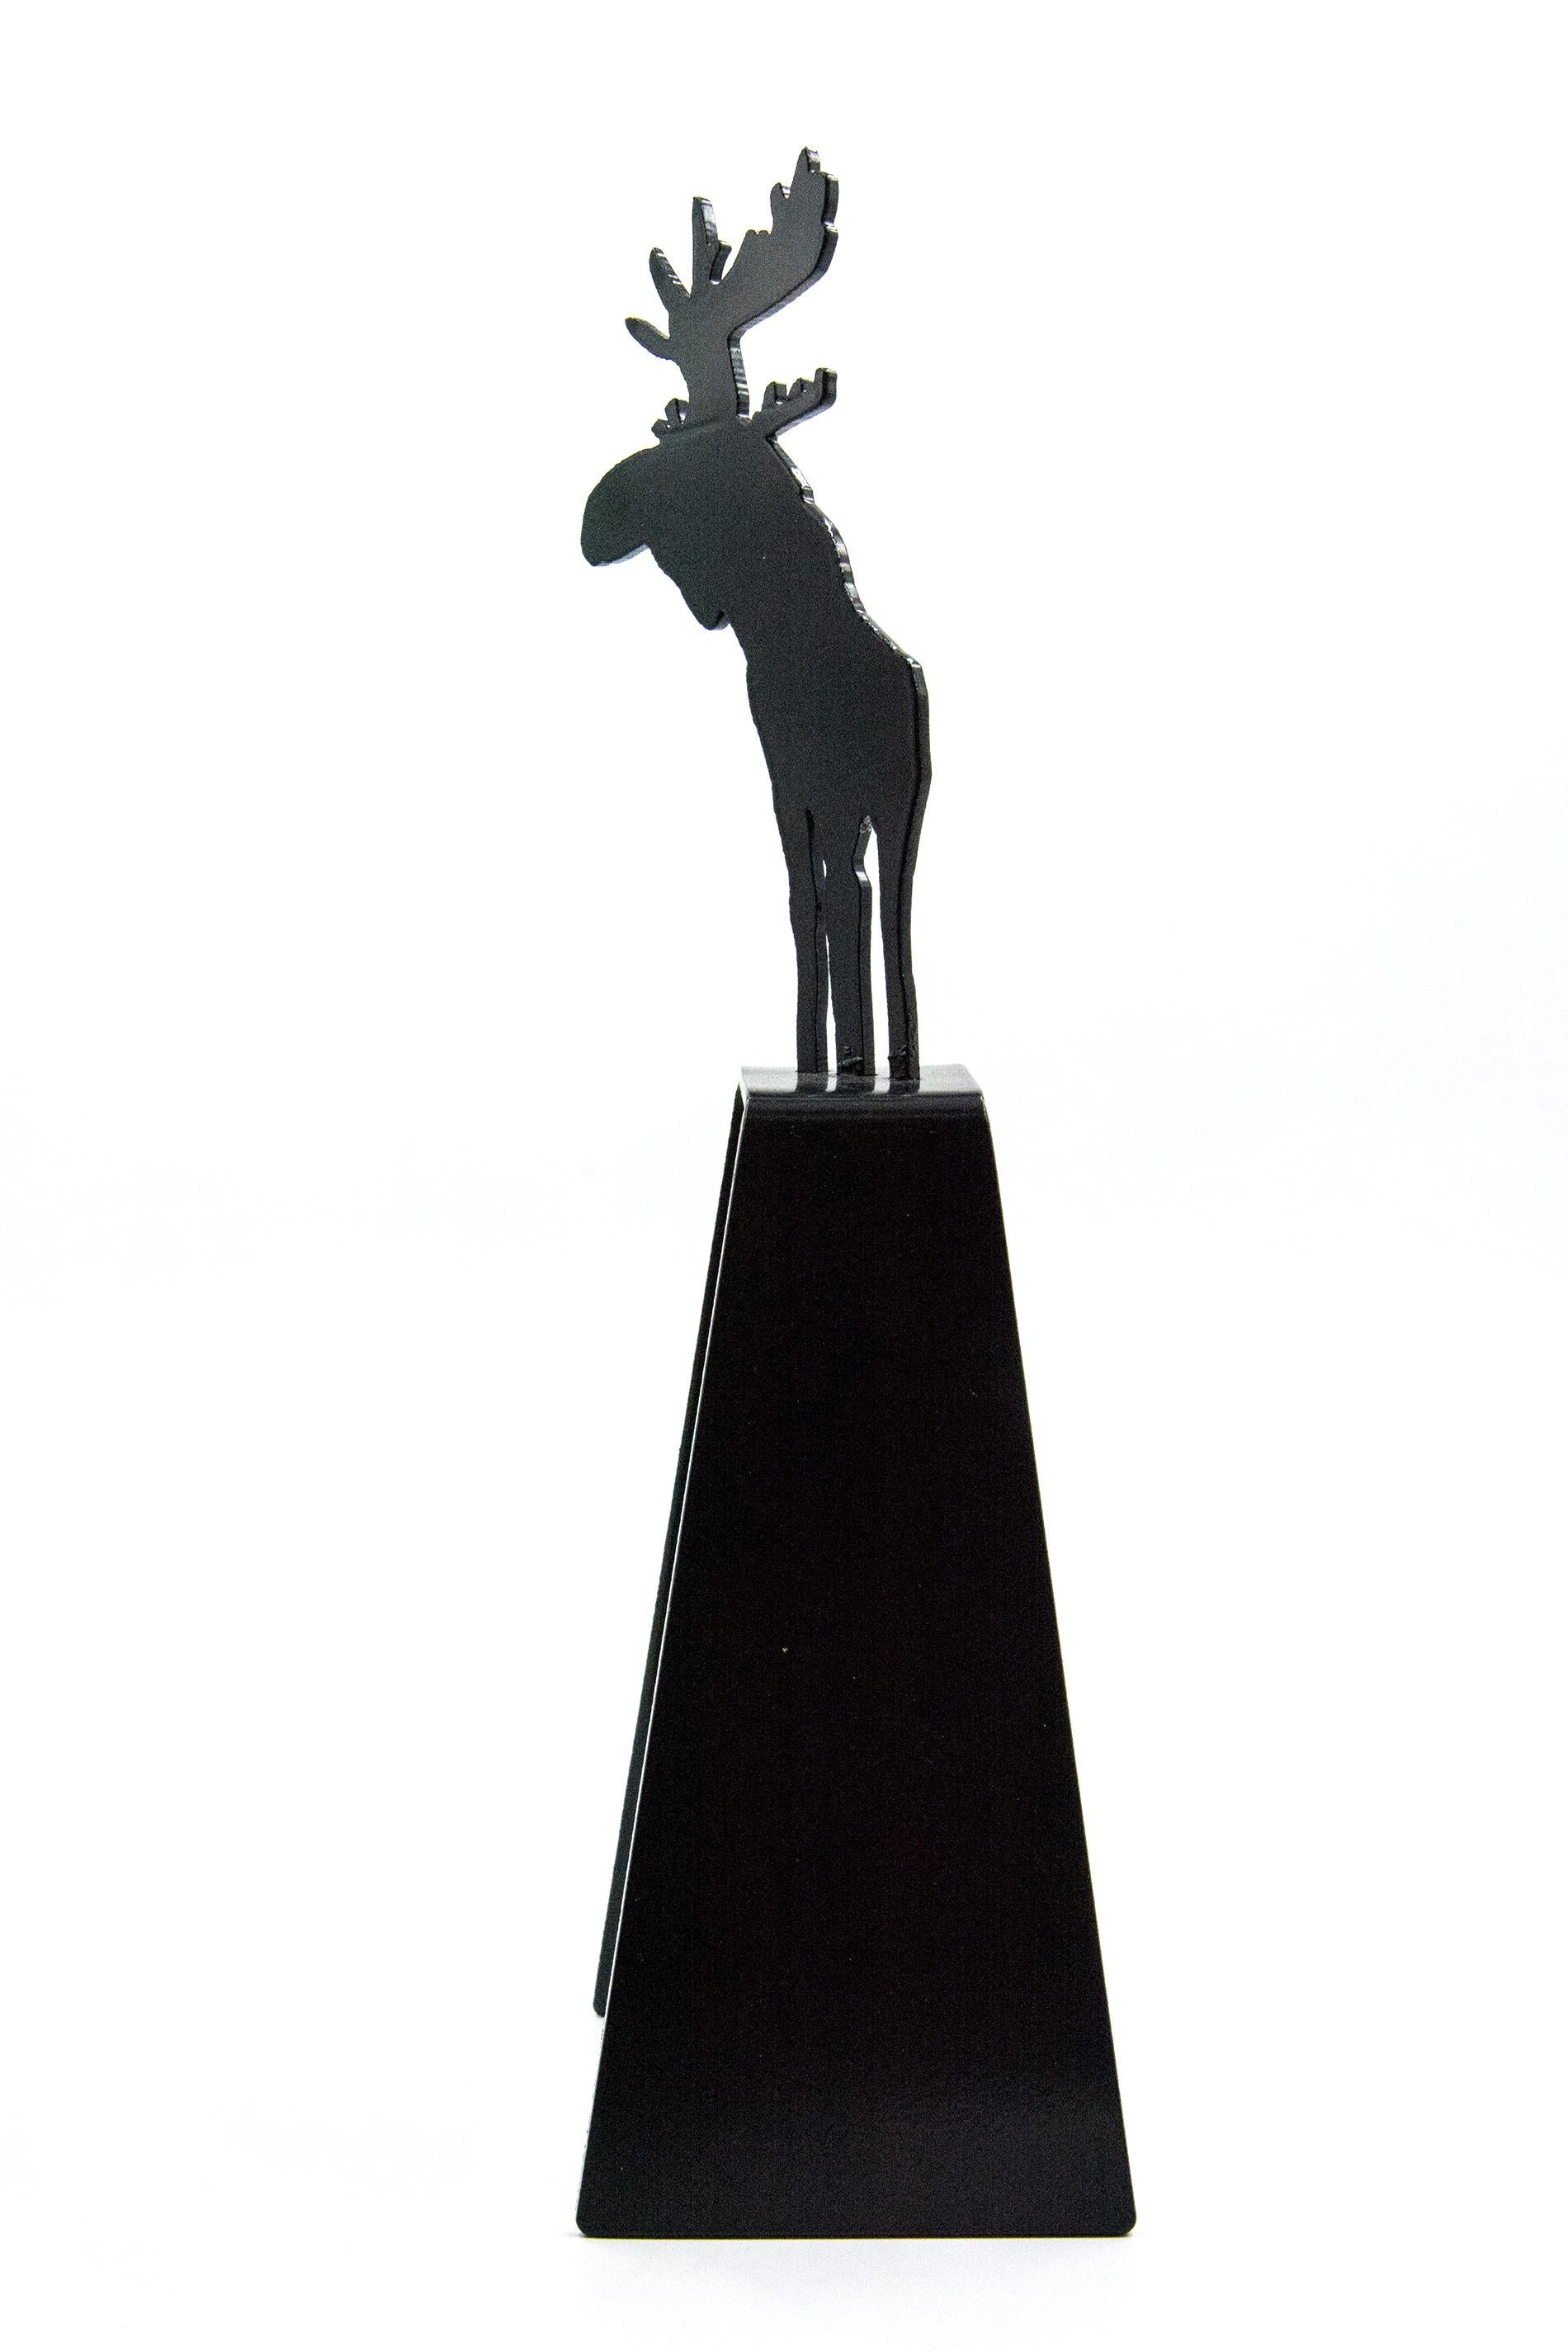 Die unverwechselbare Silhouette eines Elchs - eines der ikonischen Bilder Kanadas - wird in dieser Skulptur von Charlie Pachter gefeiert. Als kleiner Junge begegnete der Pop-Art-Künstler Pachter einmal einem Elch auf einem Jahrmarkt. Die Erinnerung